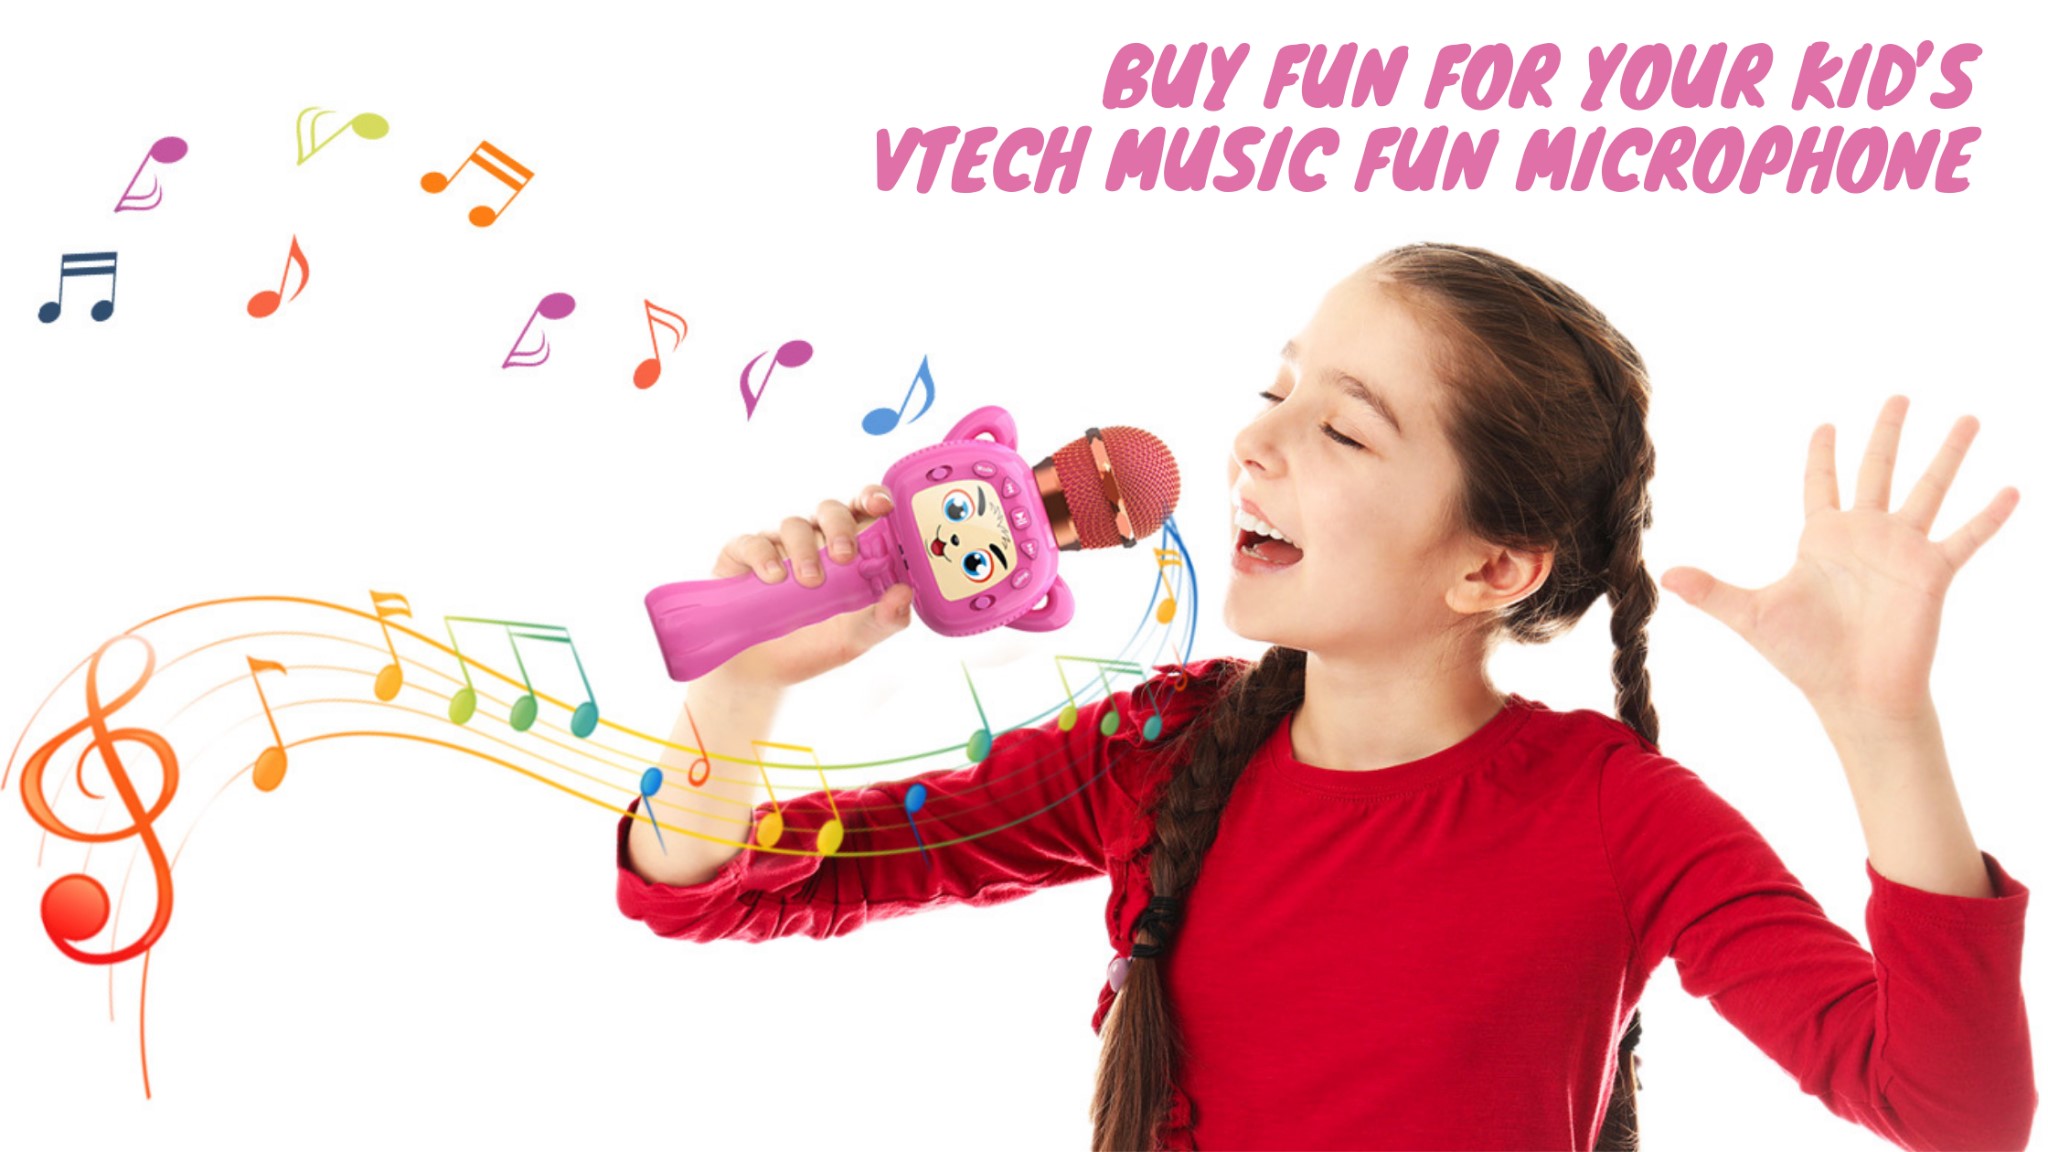 compre diversión para sus hijos vetch music fun micrófono